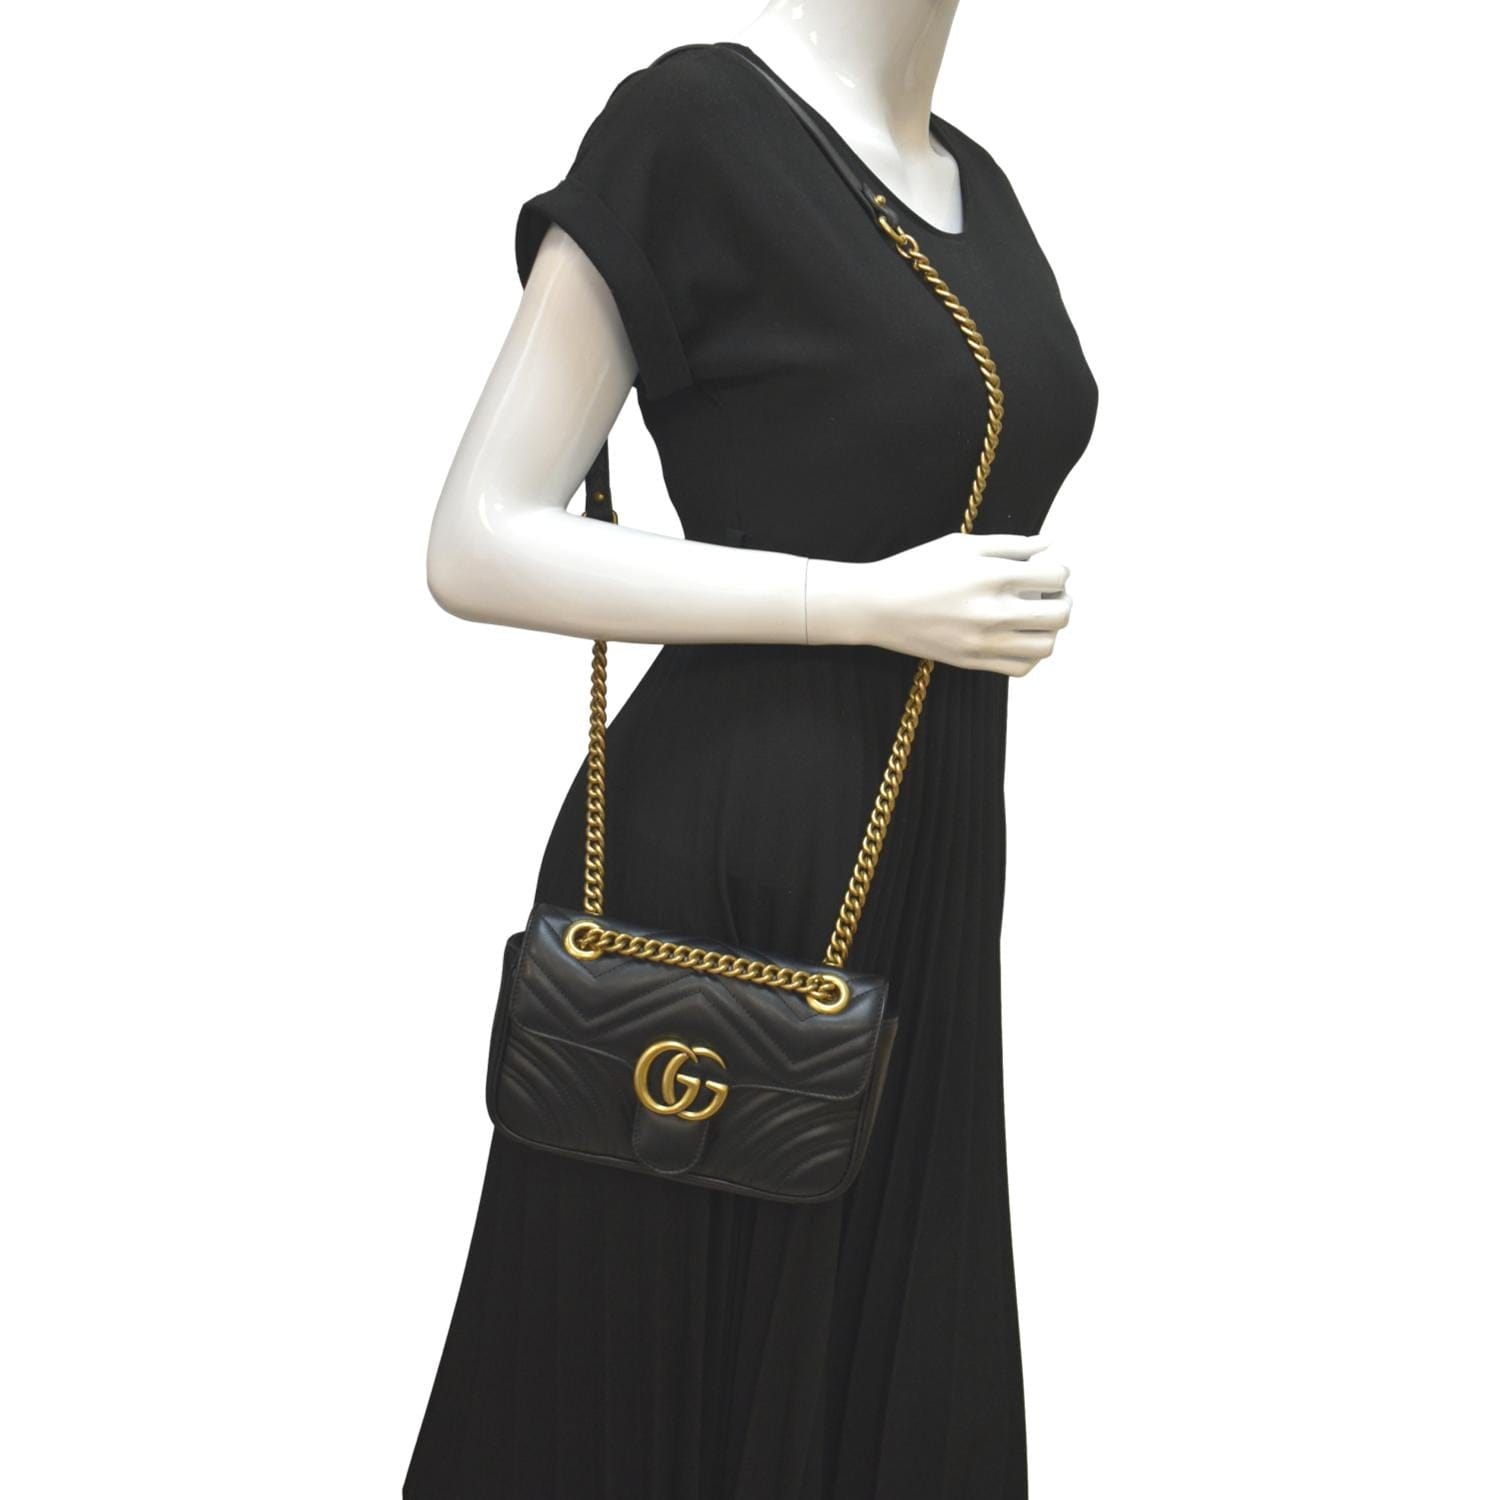 Gucci Marmont Women's Matelassé Leather Mini Shoulder Bag